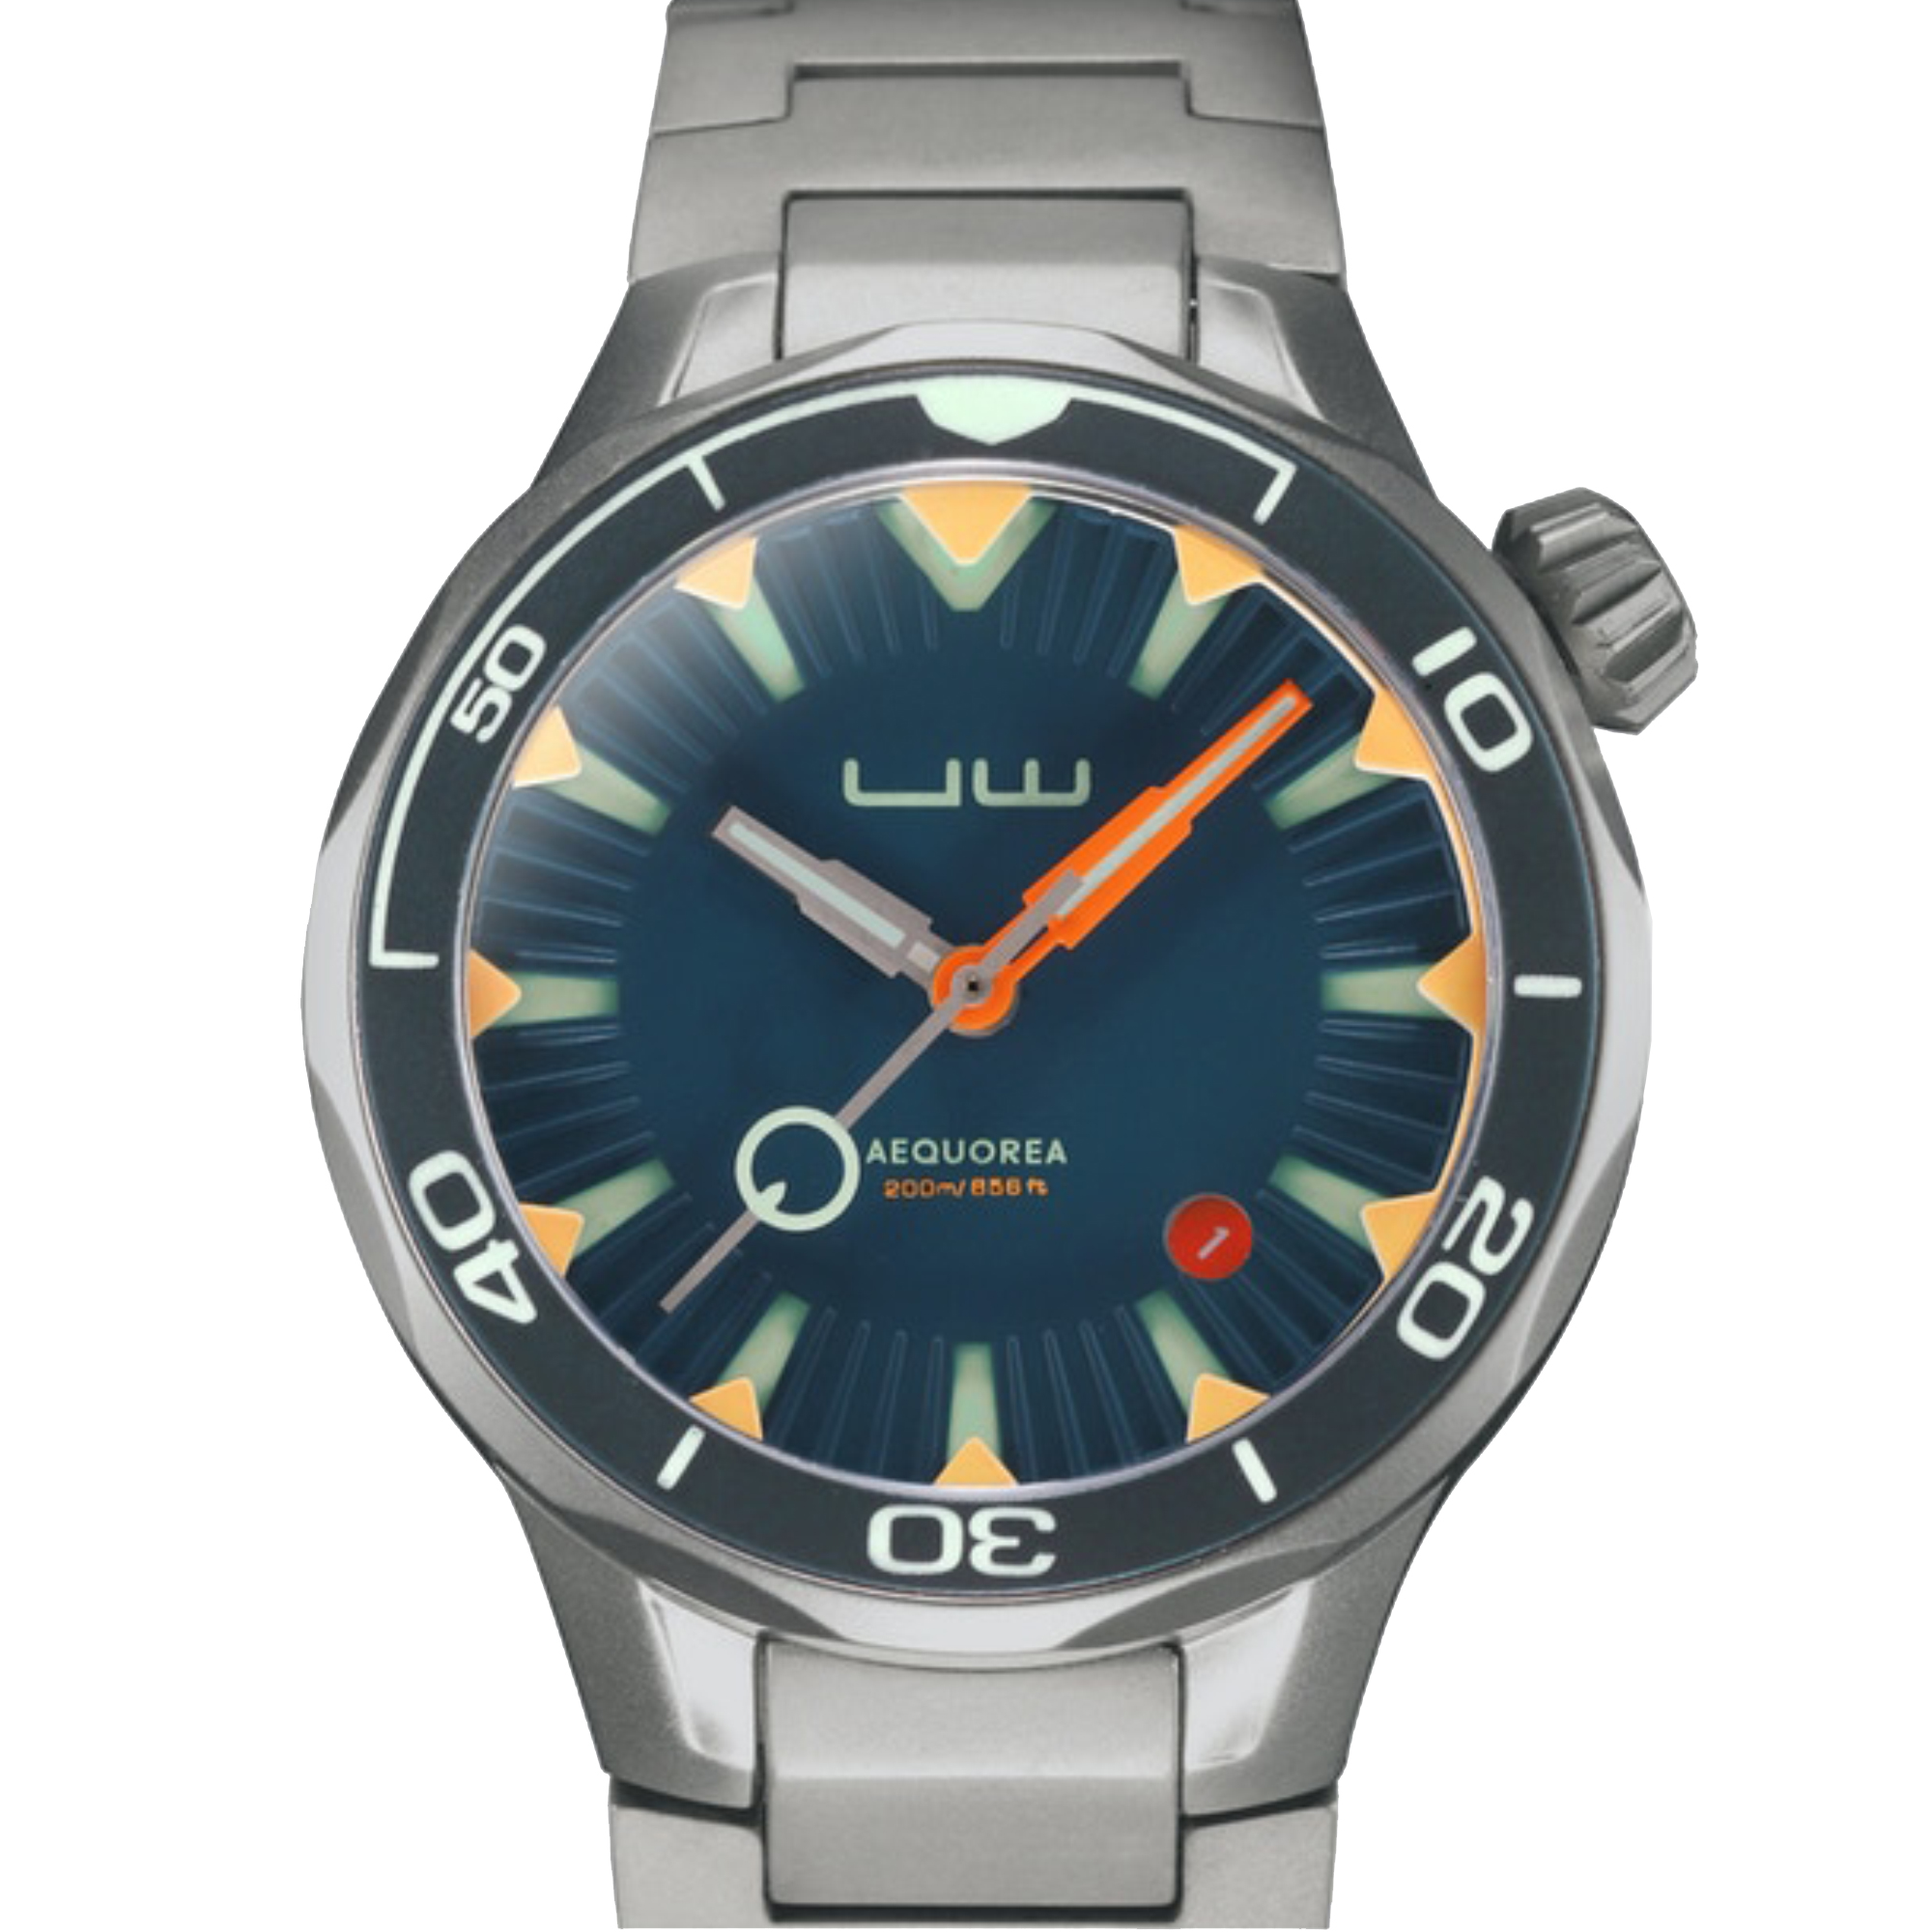 Aequorea UO02 Automatic Men's Diver Watch Blue Bezel / Blue Dial